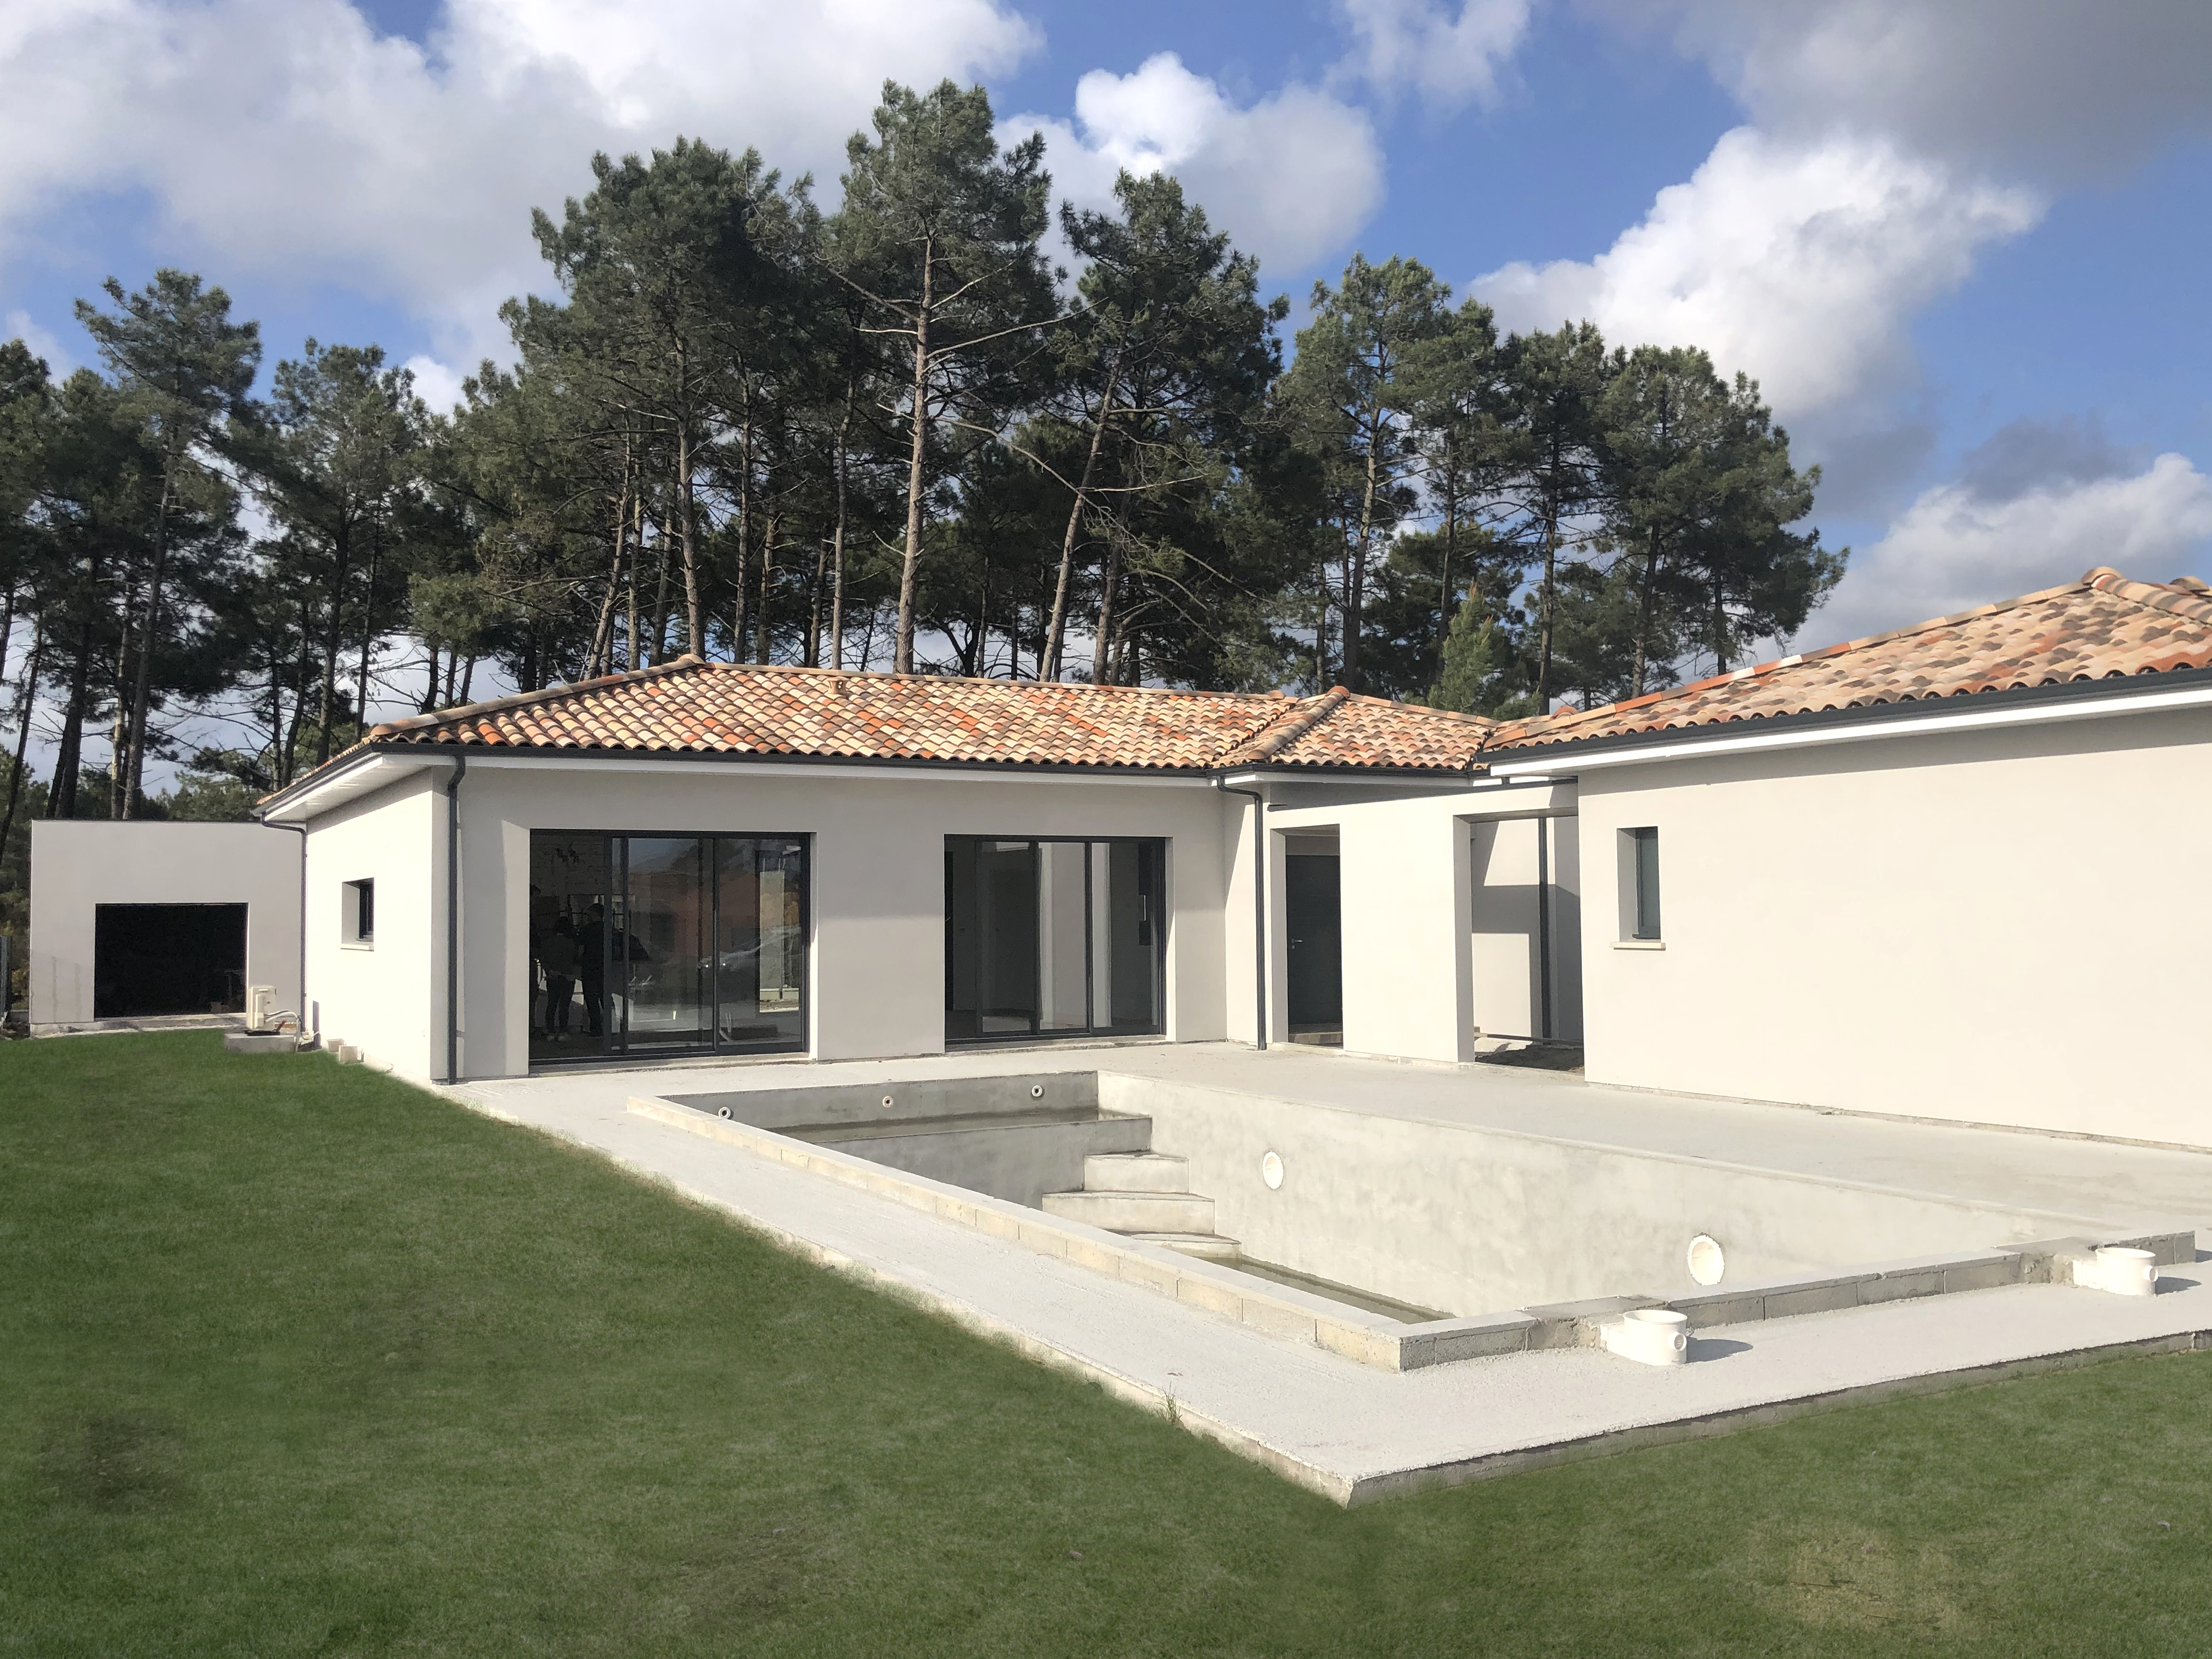 Maisons Bati Sud : Livraison de cette superbe maison de 190m² sur Andernos-Les-Bains